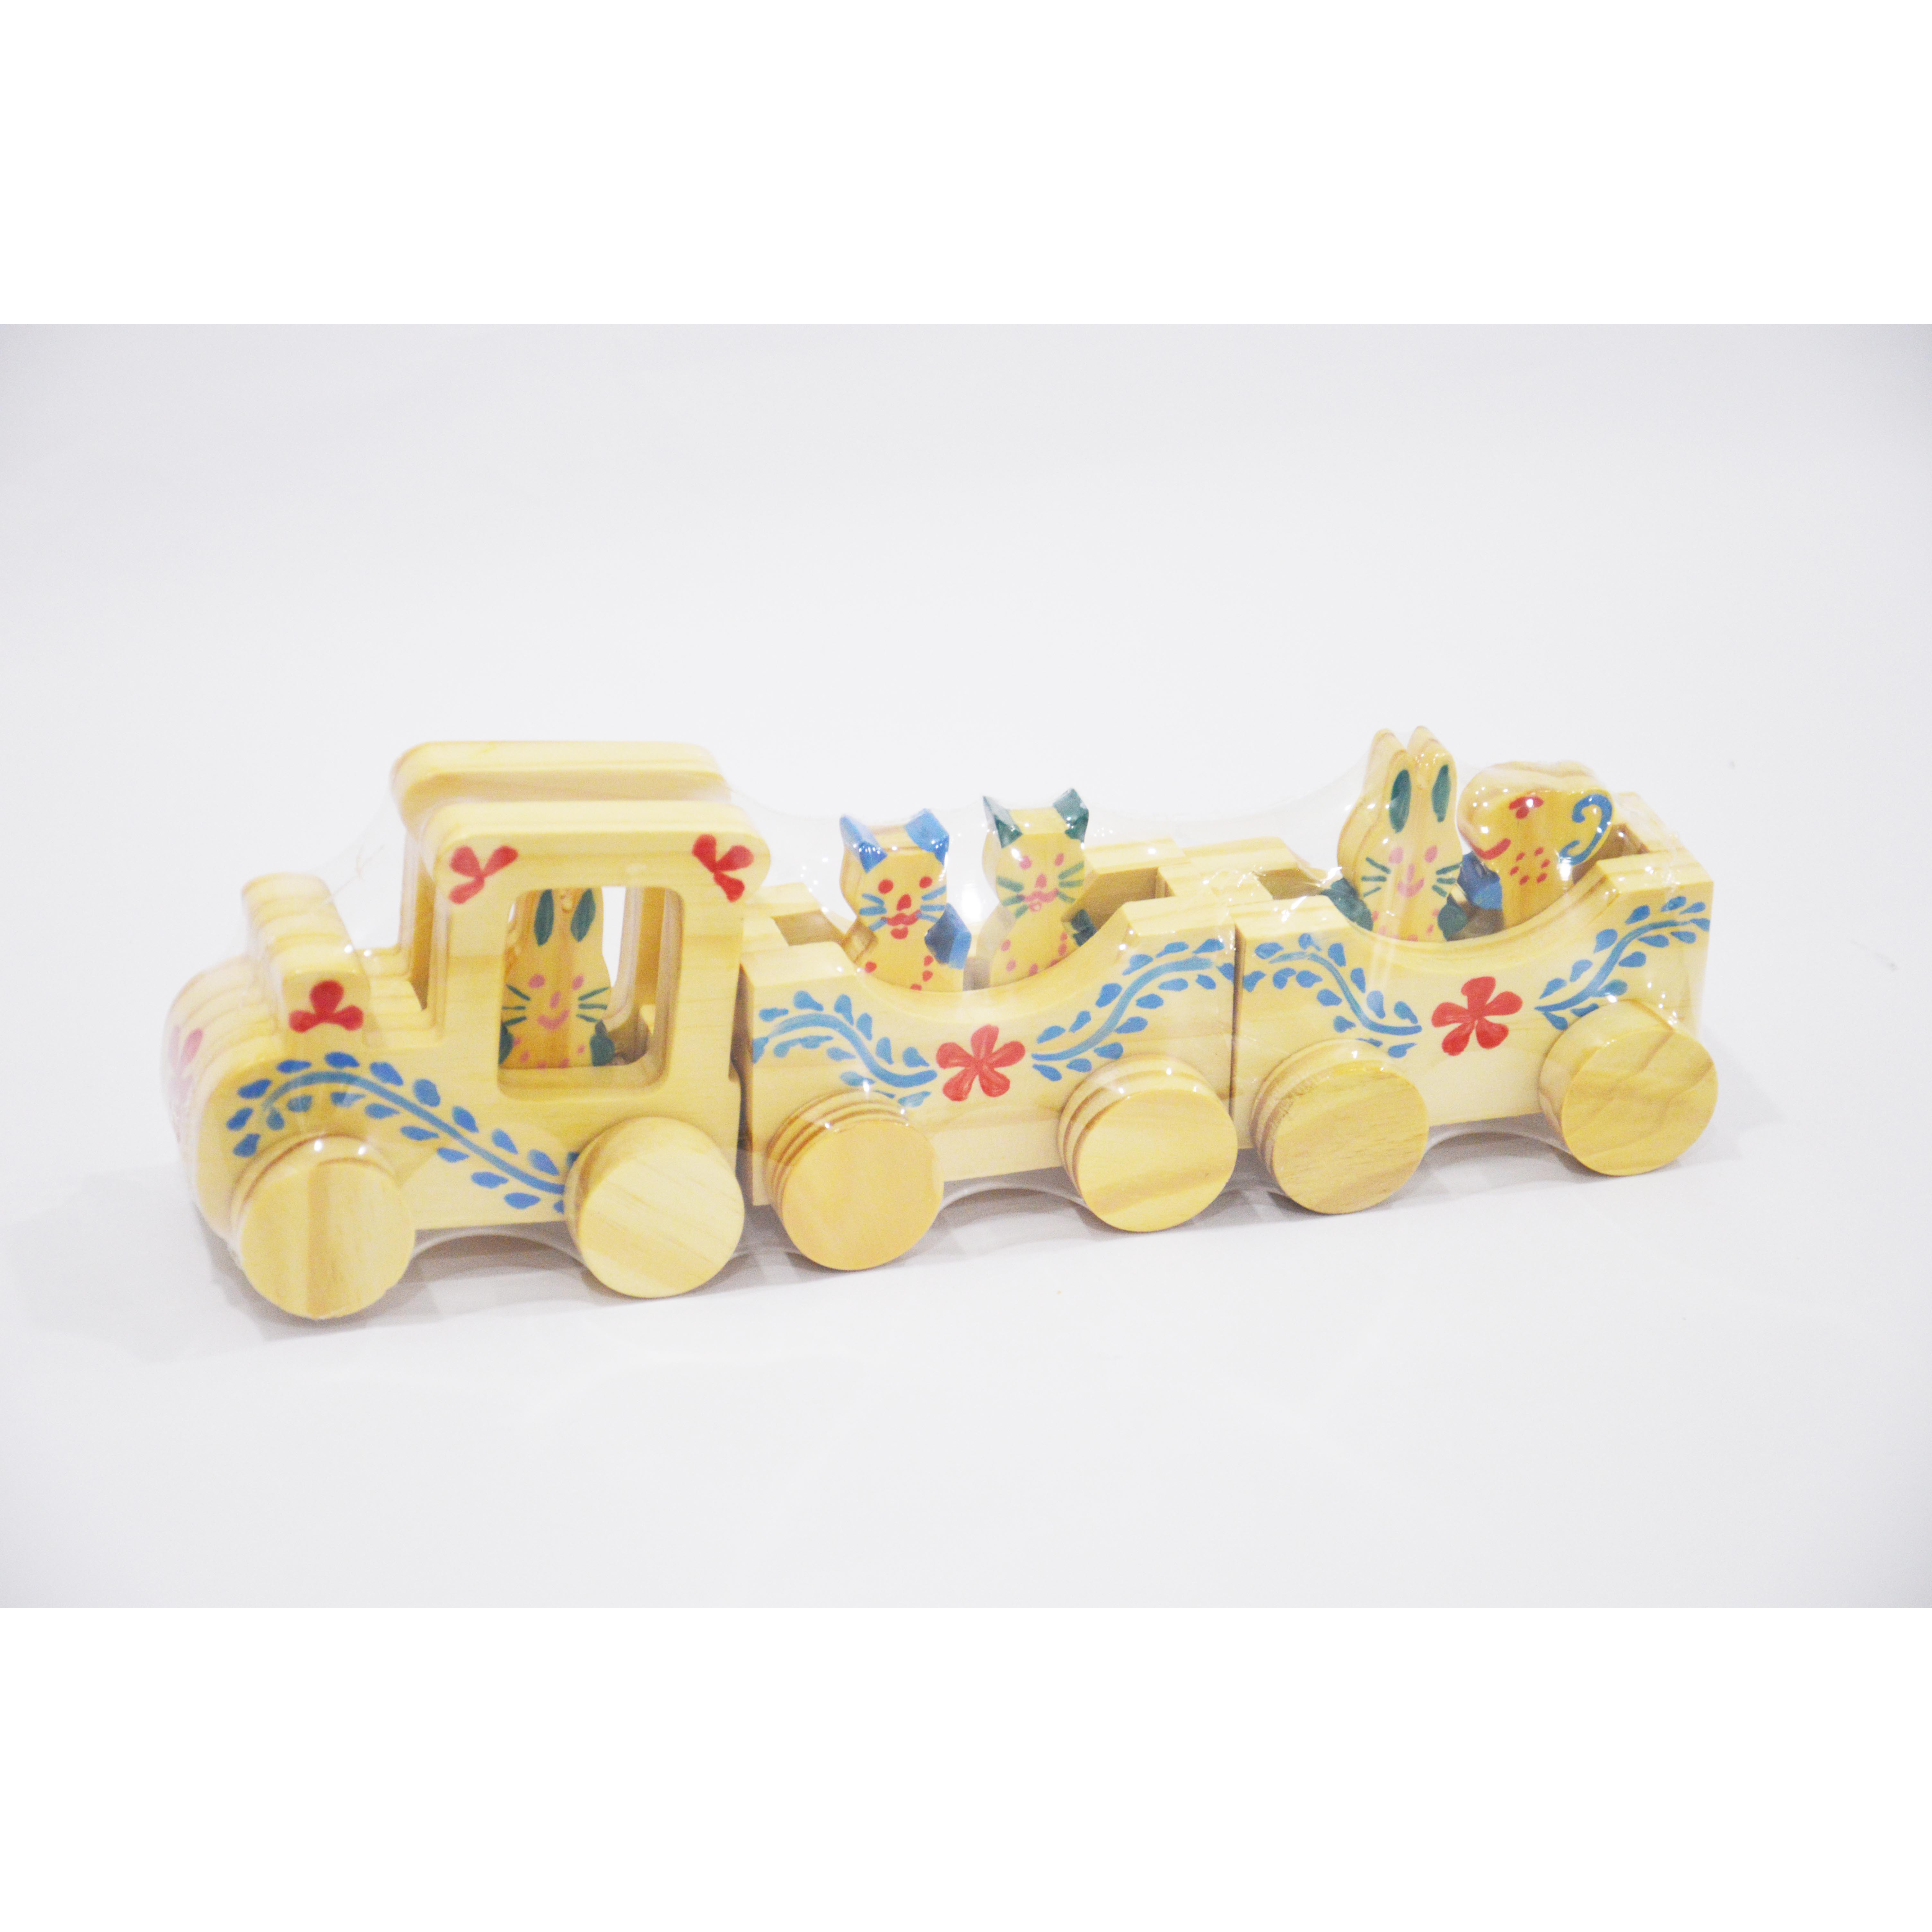 Bộ đồ chơi đoàn tàu gỗ làm từ chất liệu gỗ có độ bền cao, an toàn dành cho bé, dễ dàng cầm nắm vui chơi sáng tạo